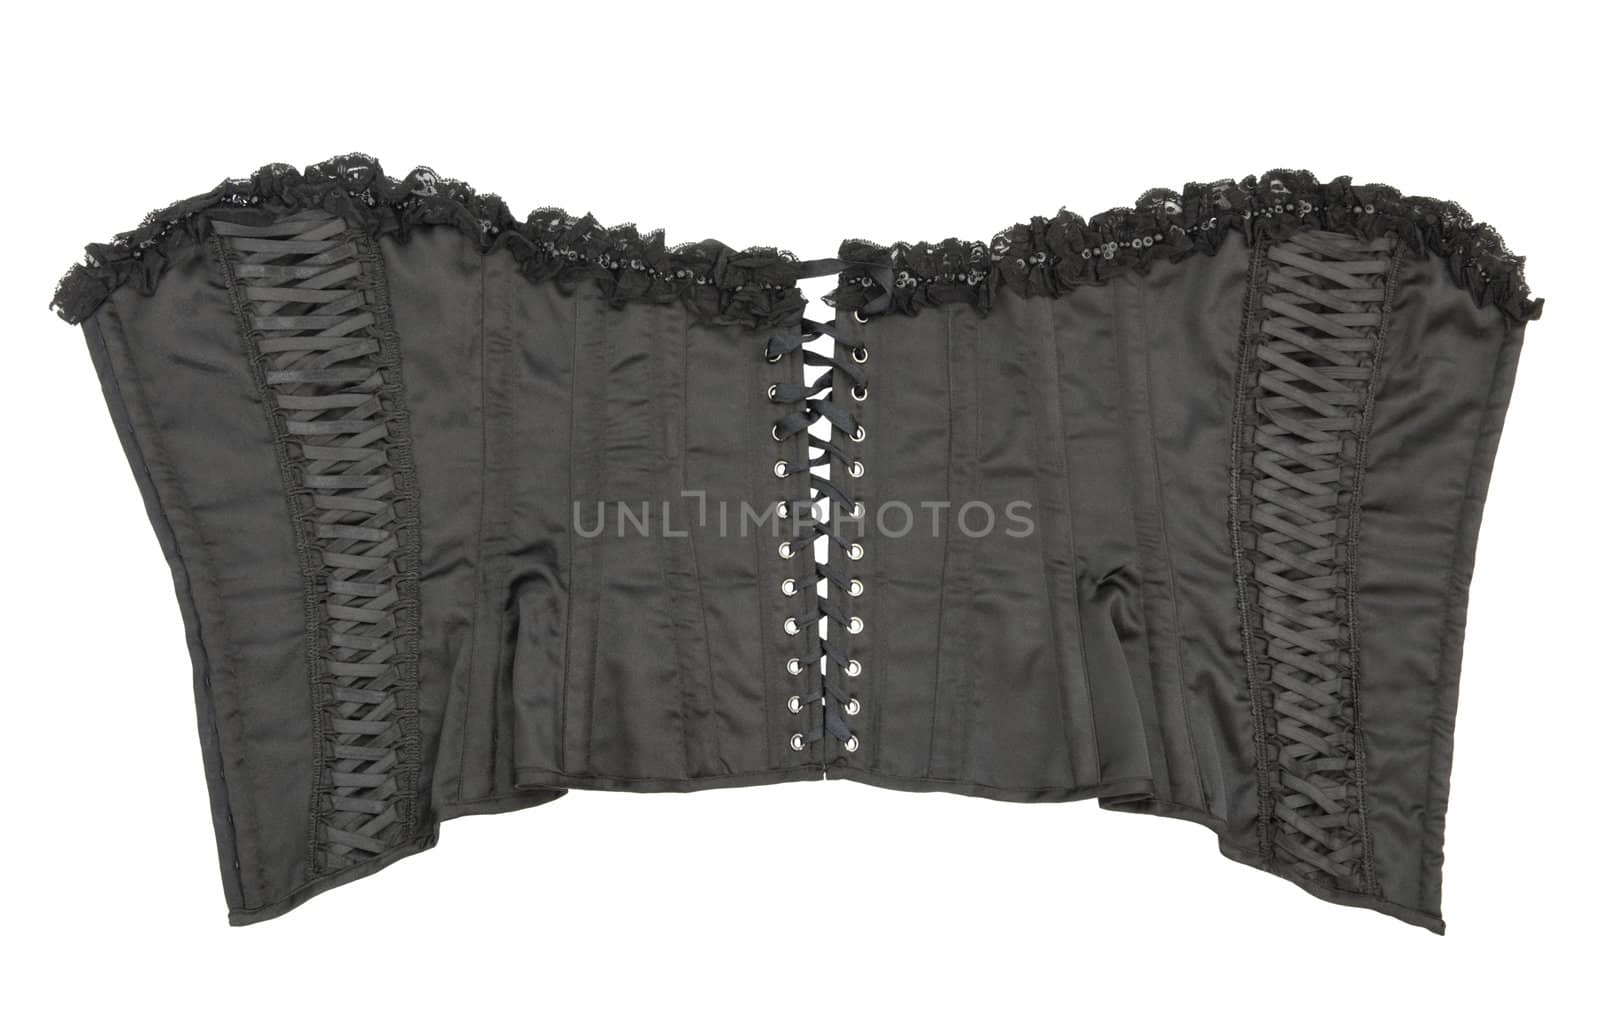 Opened female black corset. Isolated on white background